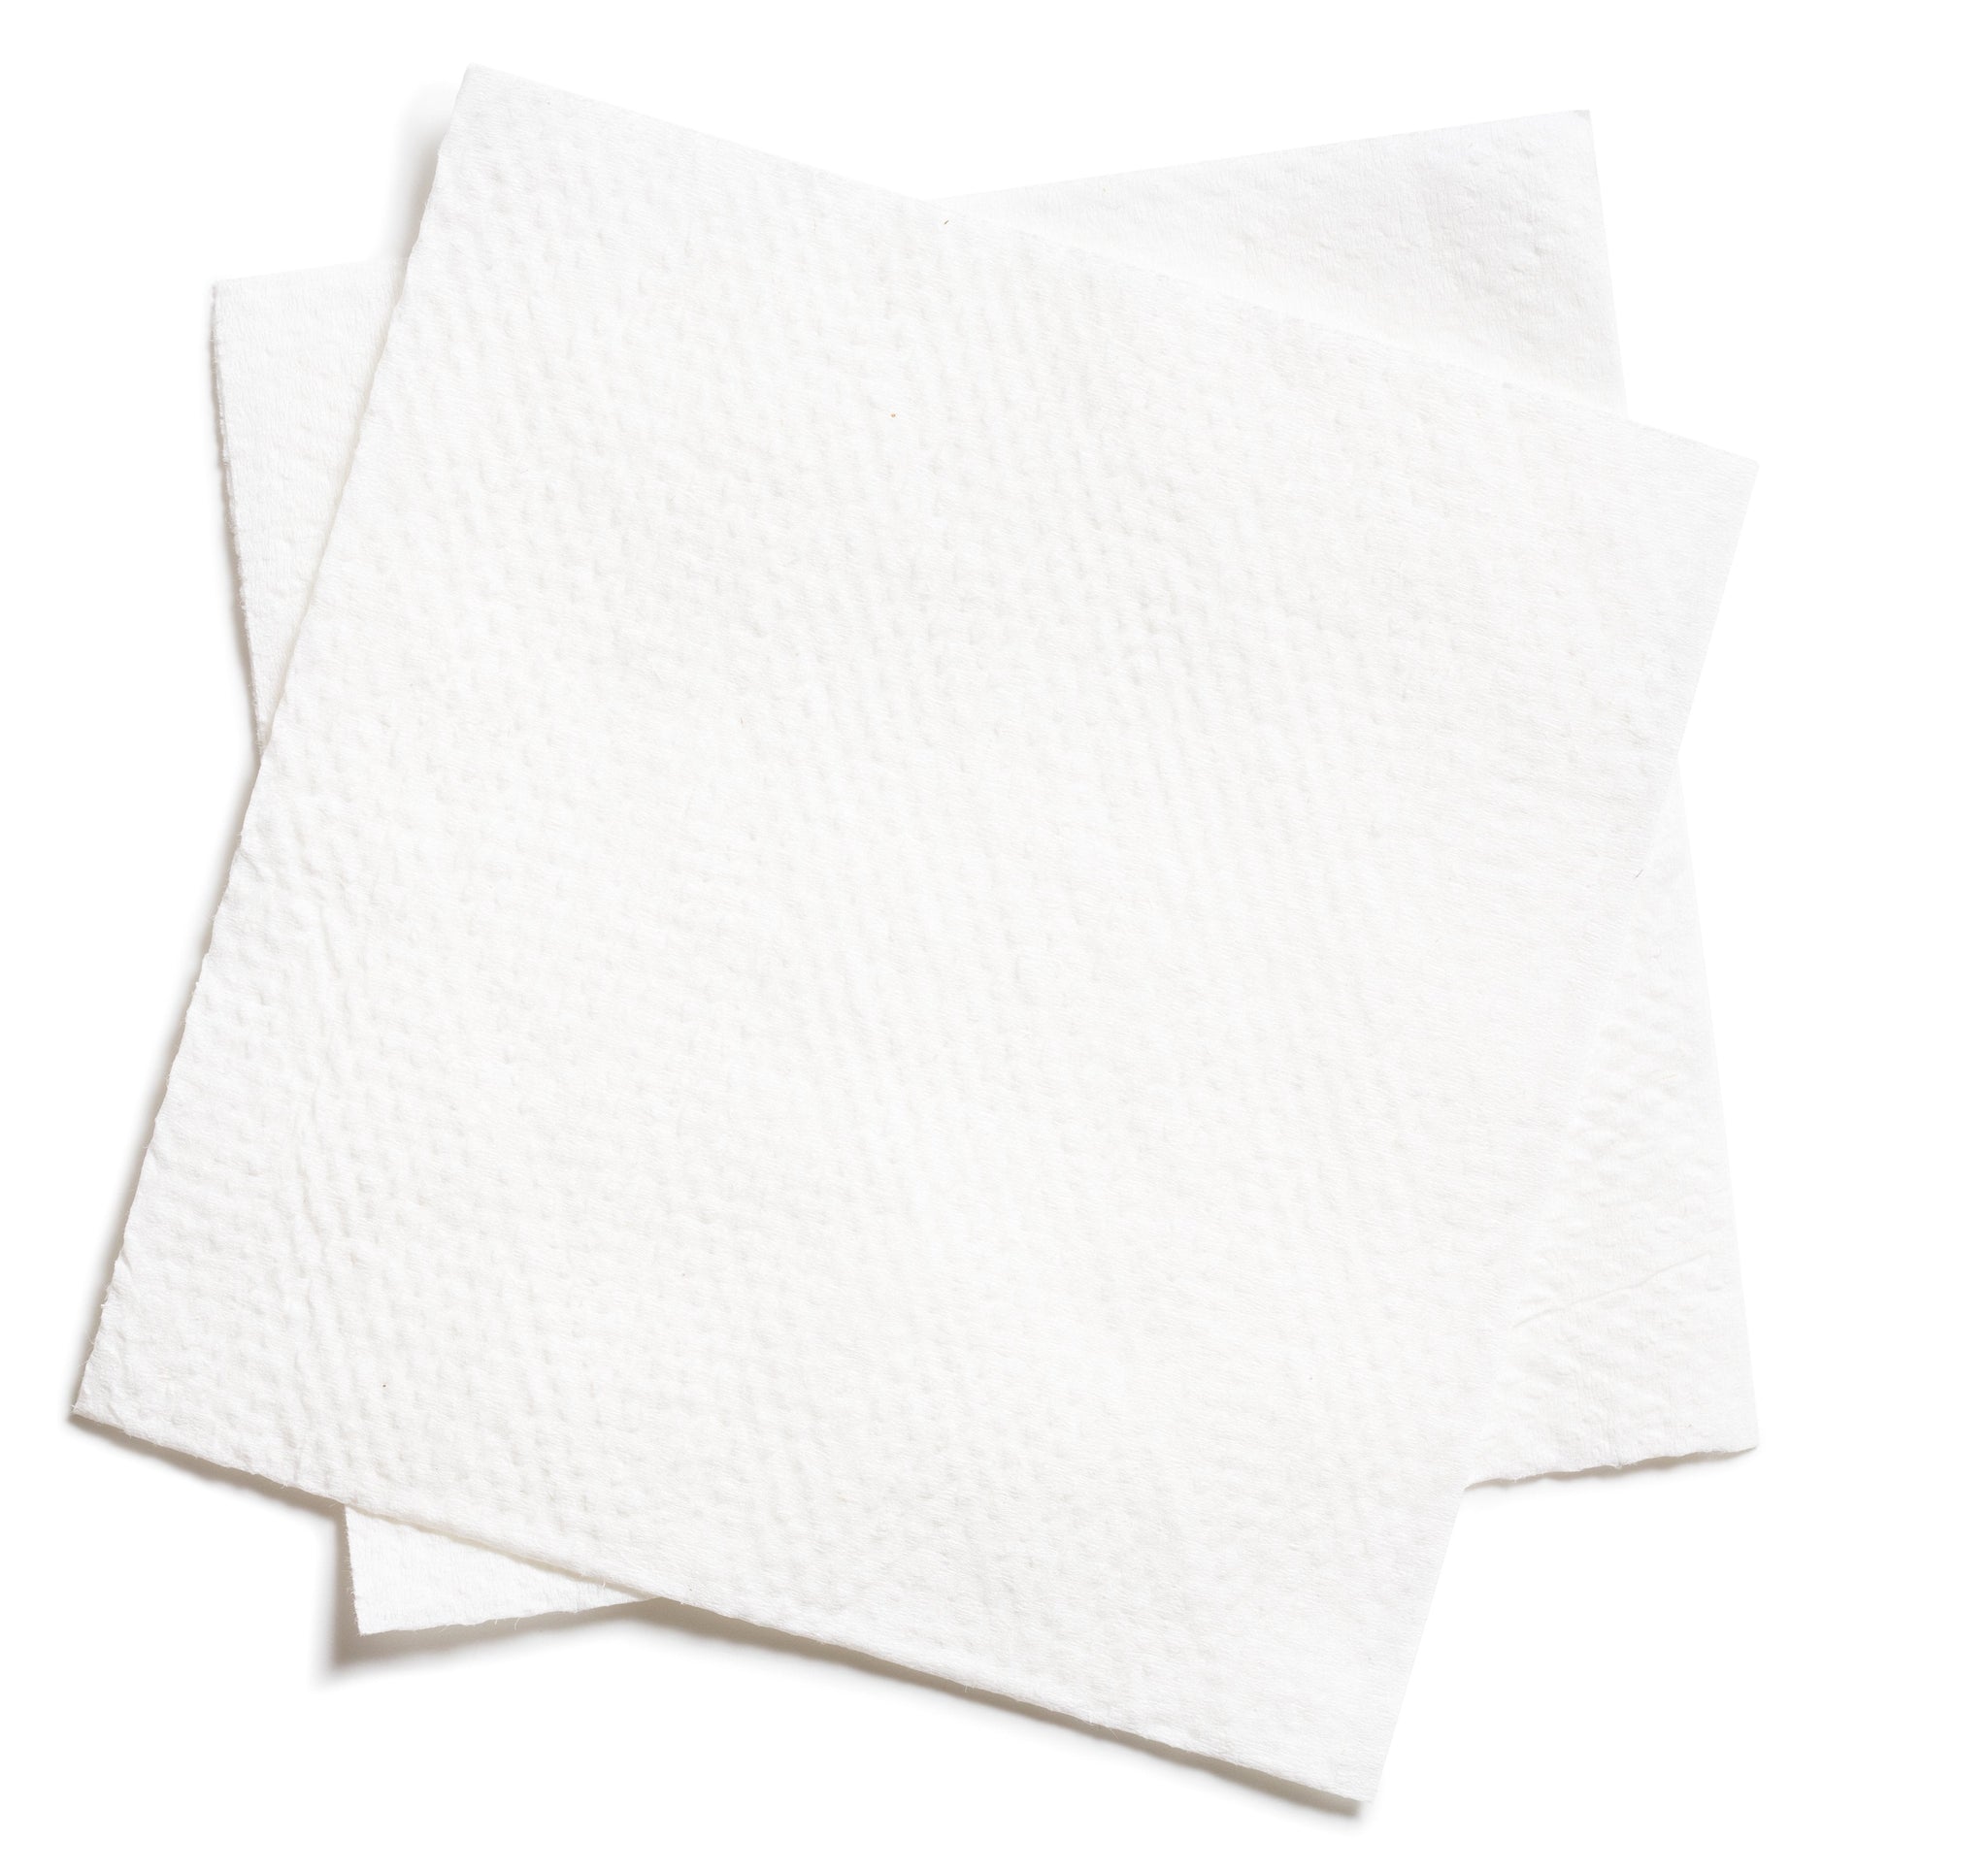 aba>Scott Paper dinner napkins (50 pack)